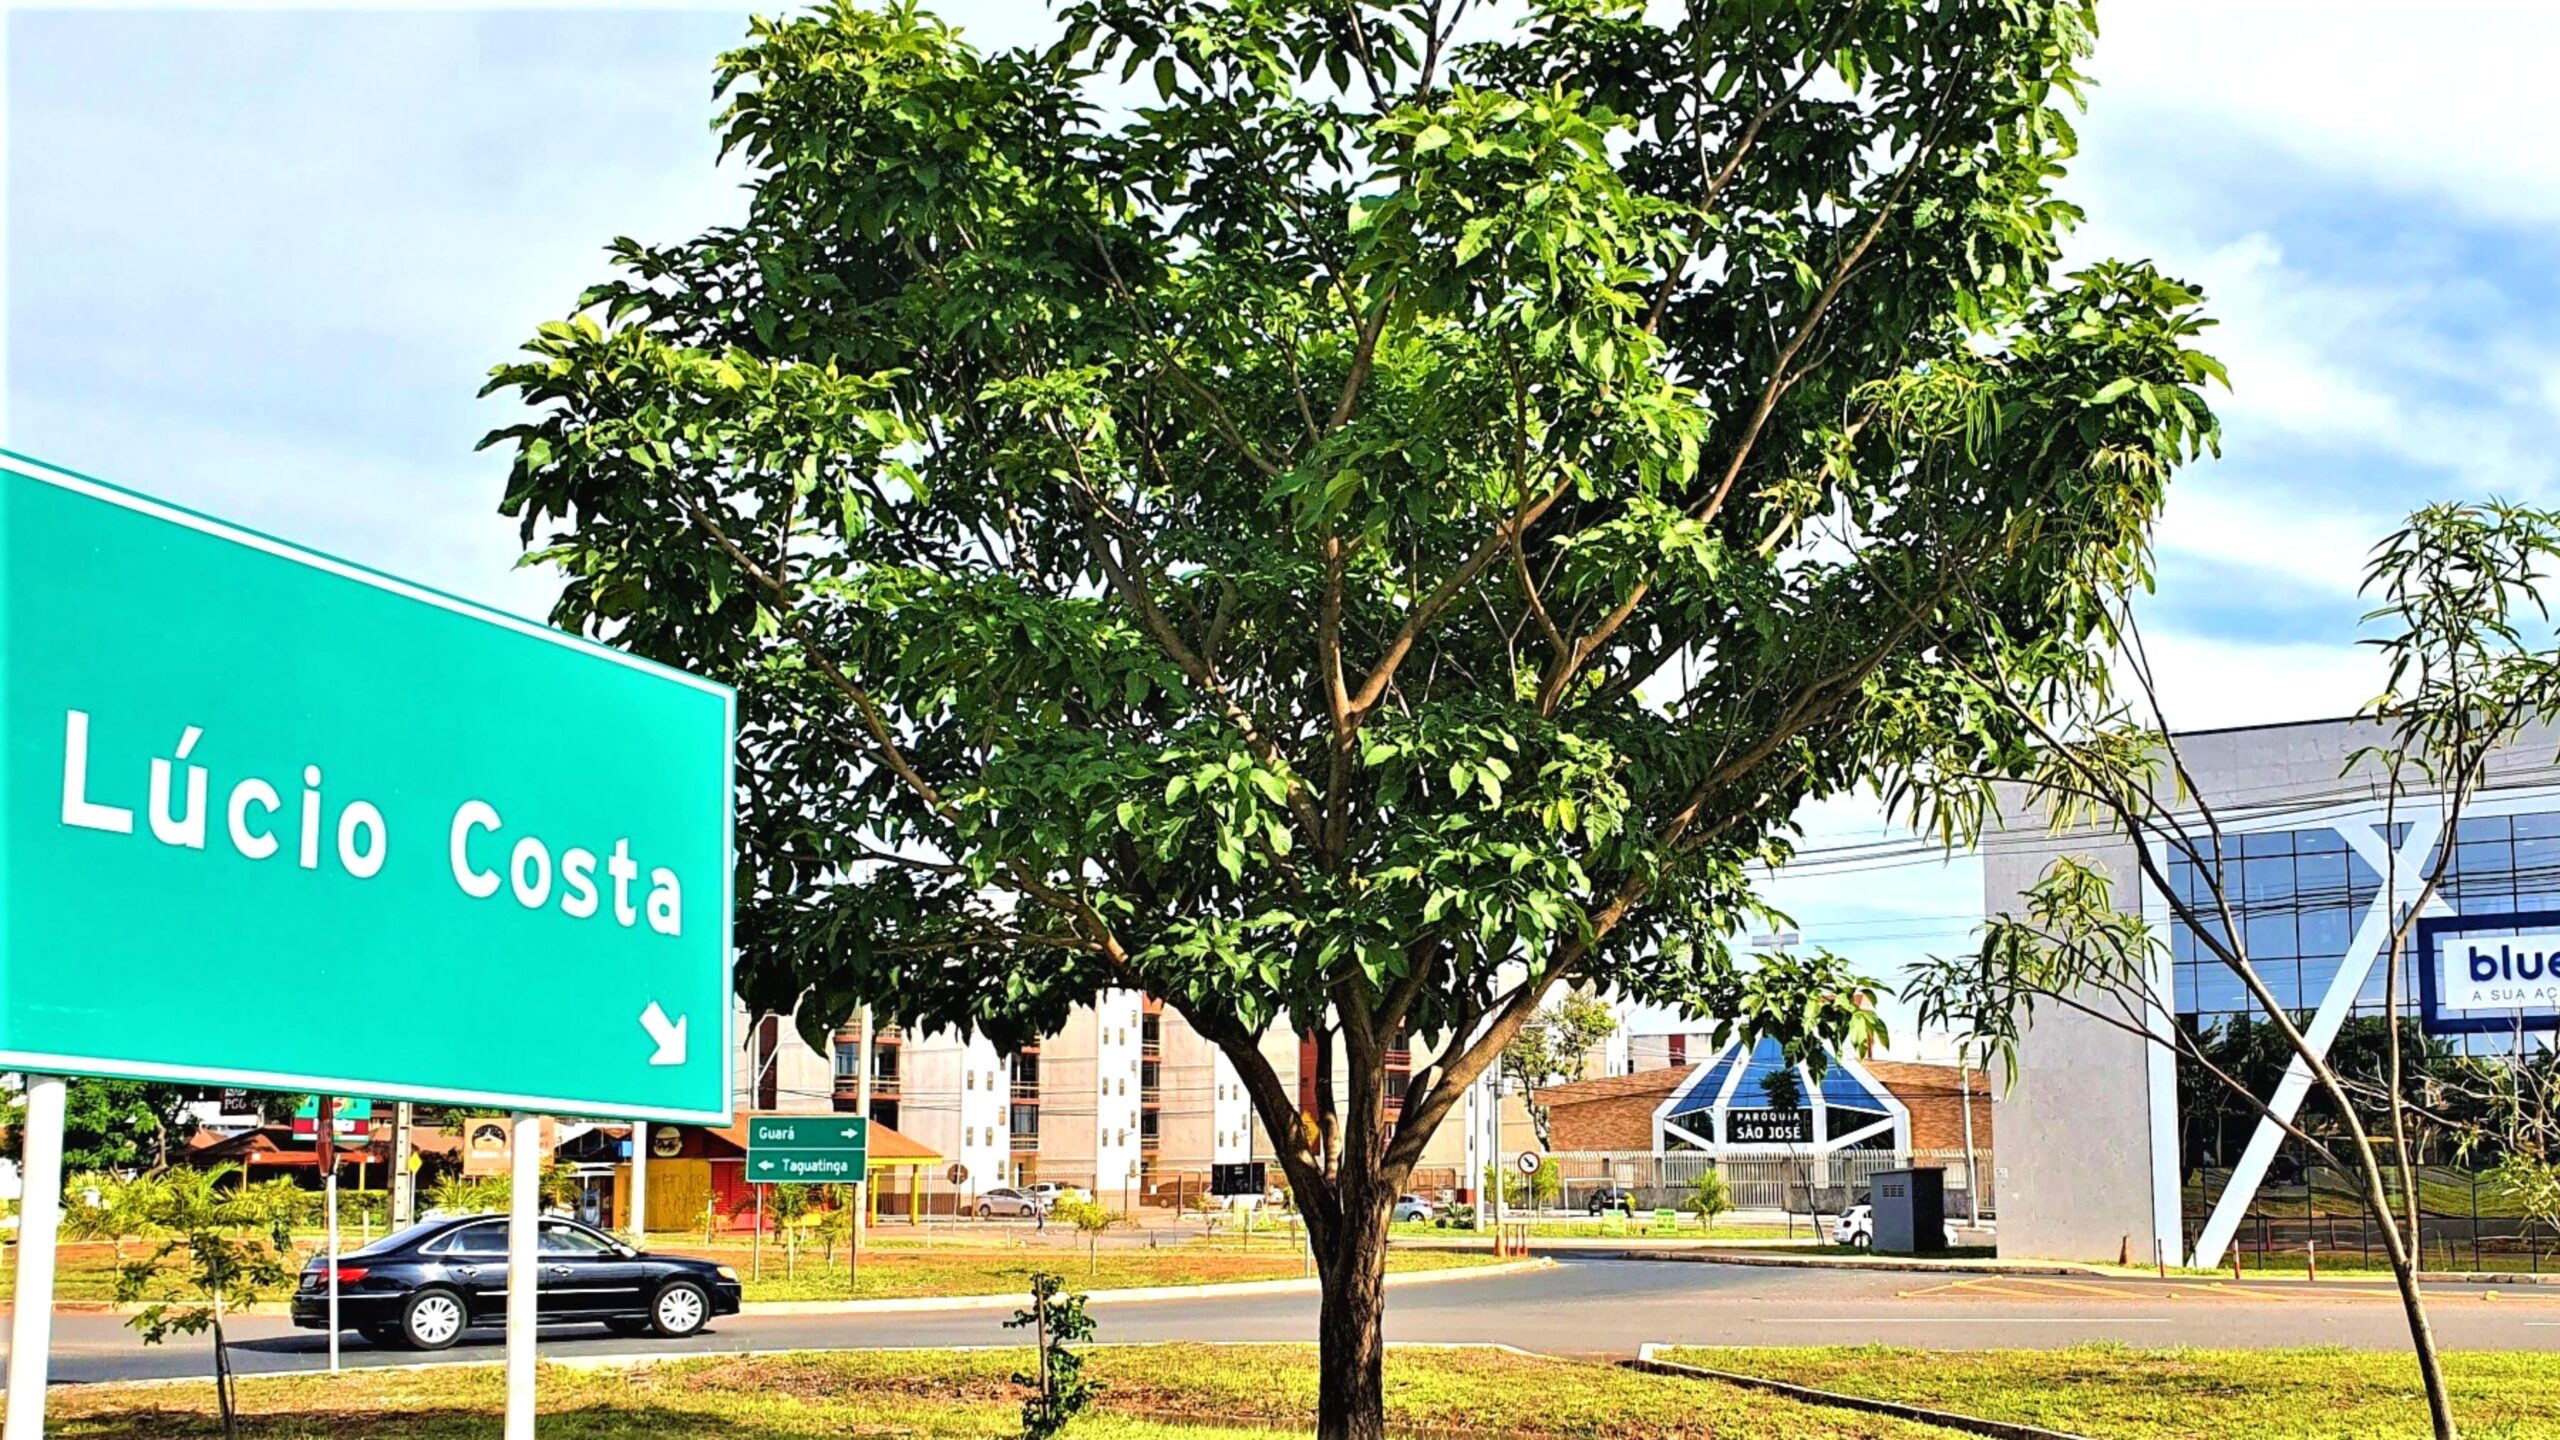 Destaques – Administração Regional do Guará